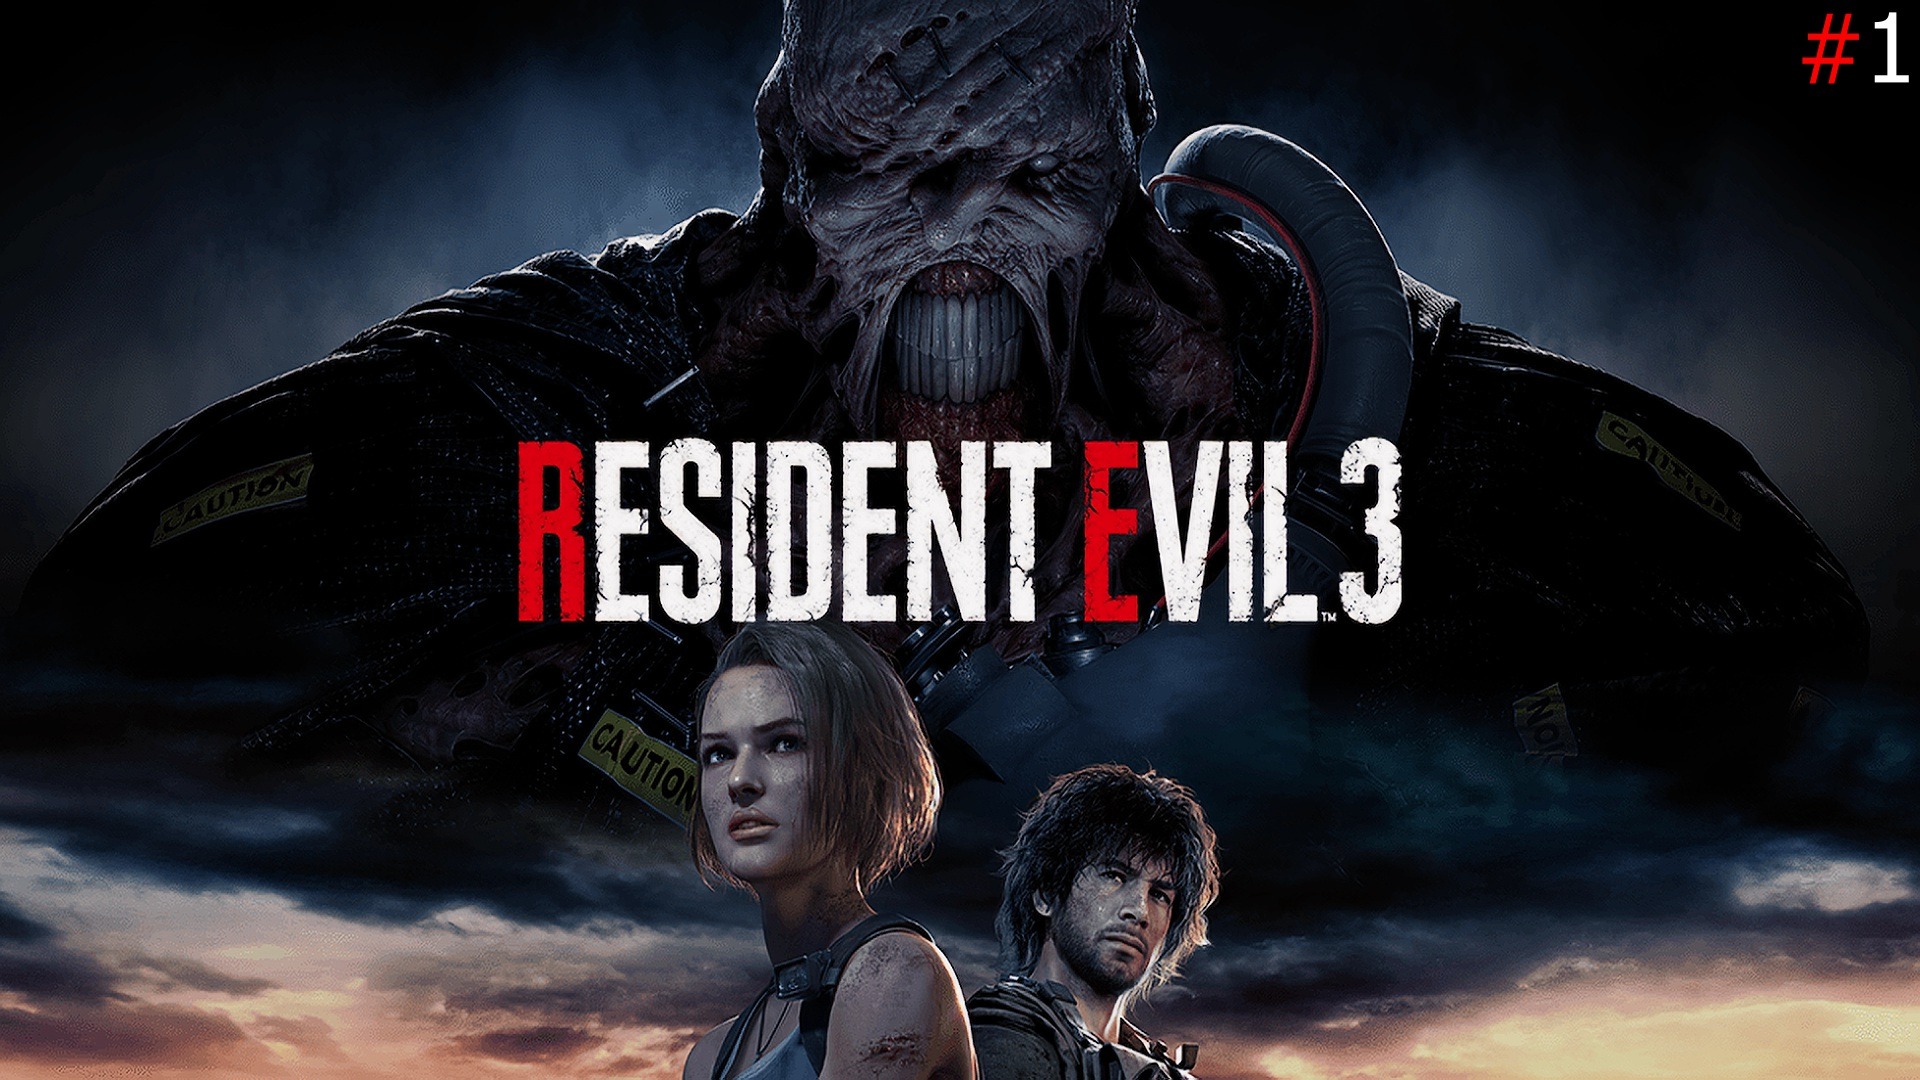 Resident Evil 3 Remake Обзор и Прохождение на Русском Часть#1|Обитель Зла 3 Ремейк|Walkthrough|Стрим